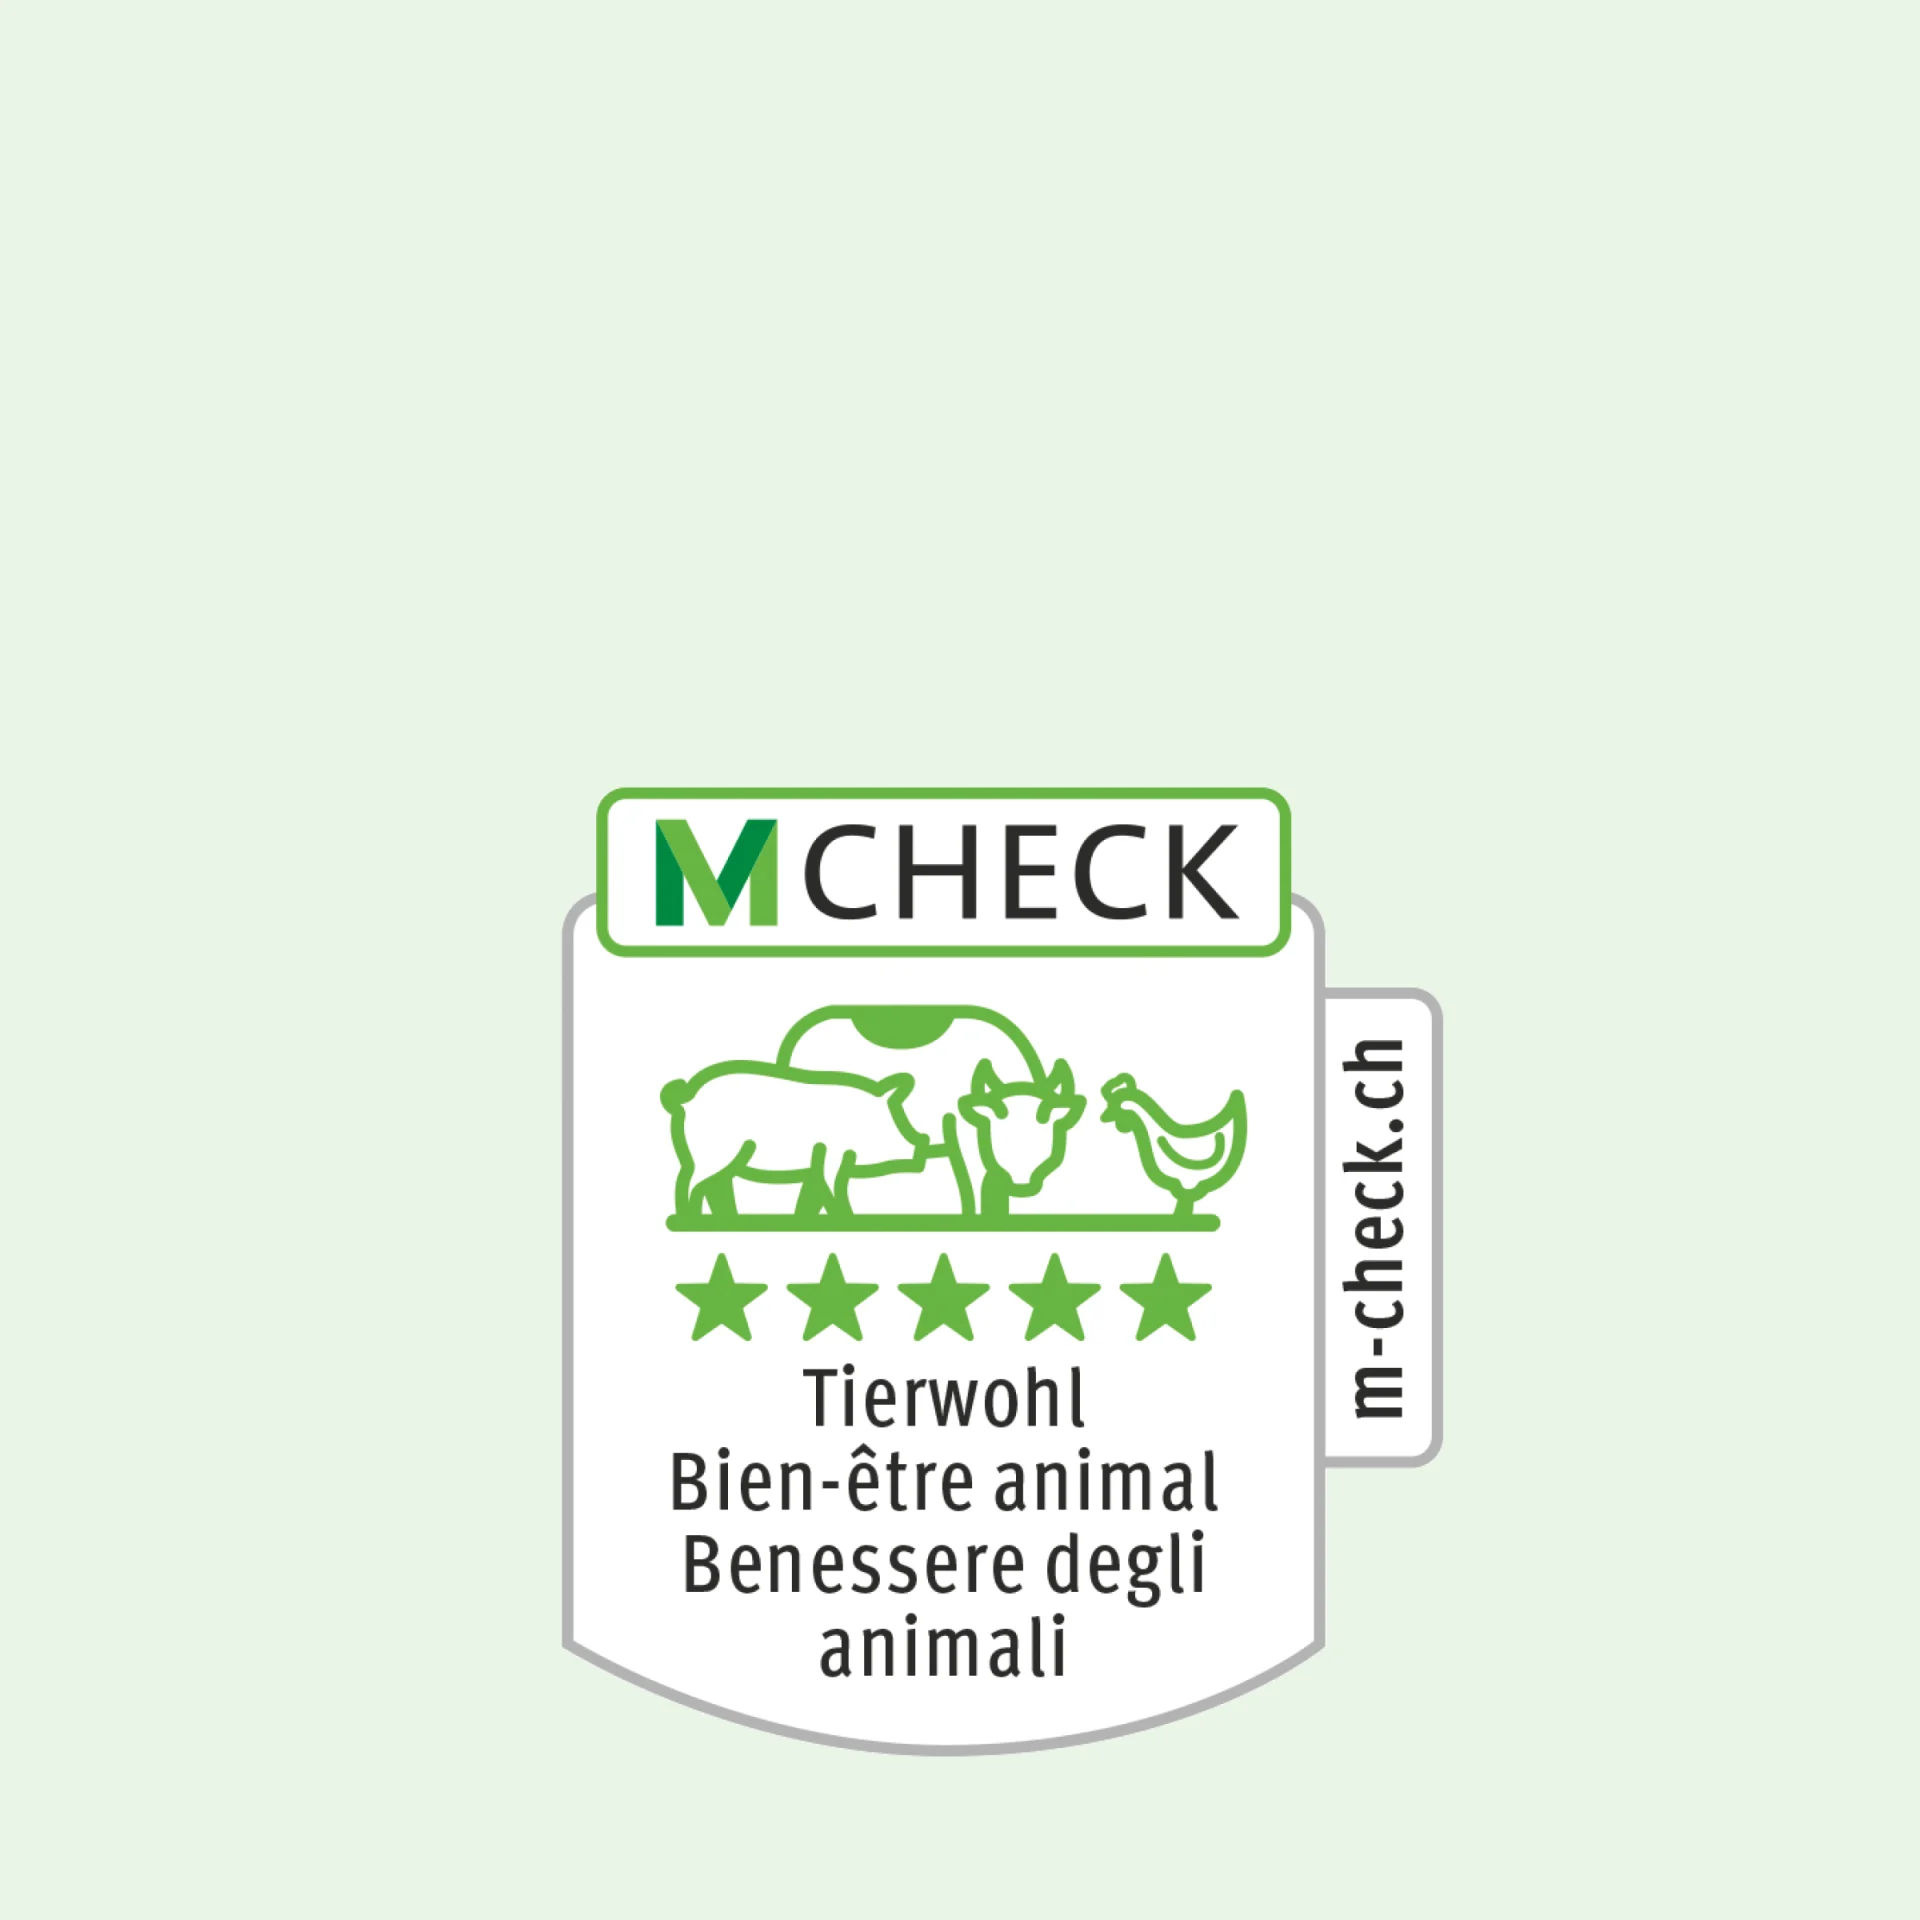 Icône M-Check représentant une vache, un porc et un poulet, et quatre étoiles en bien-être animal dessous.